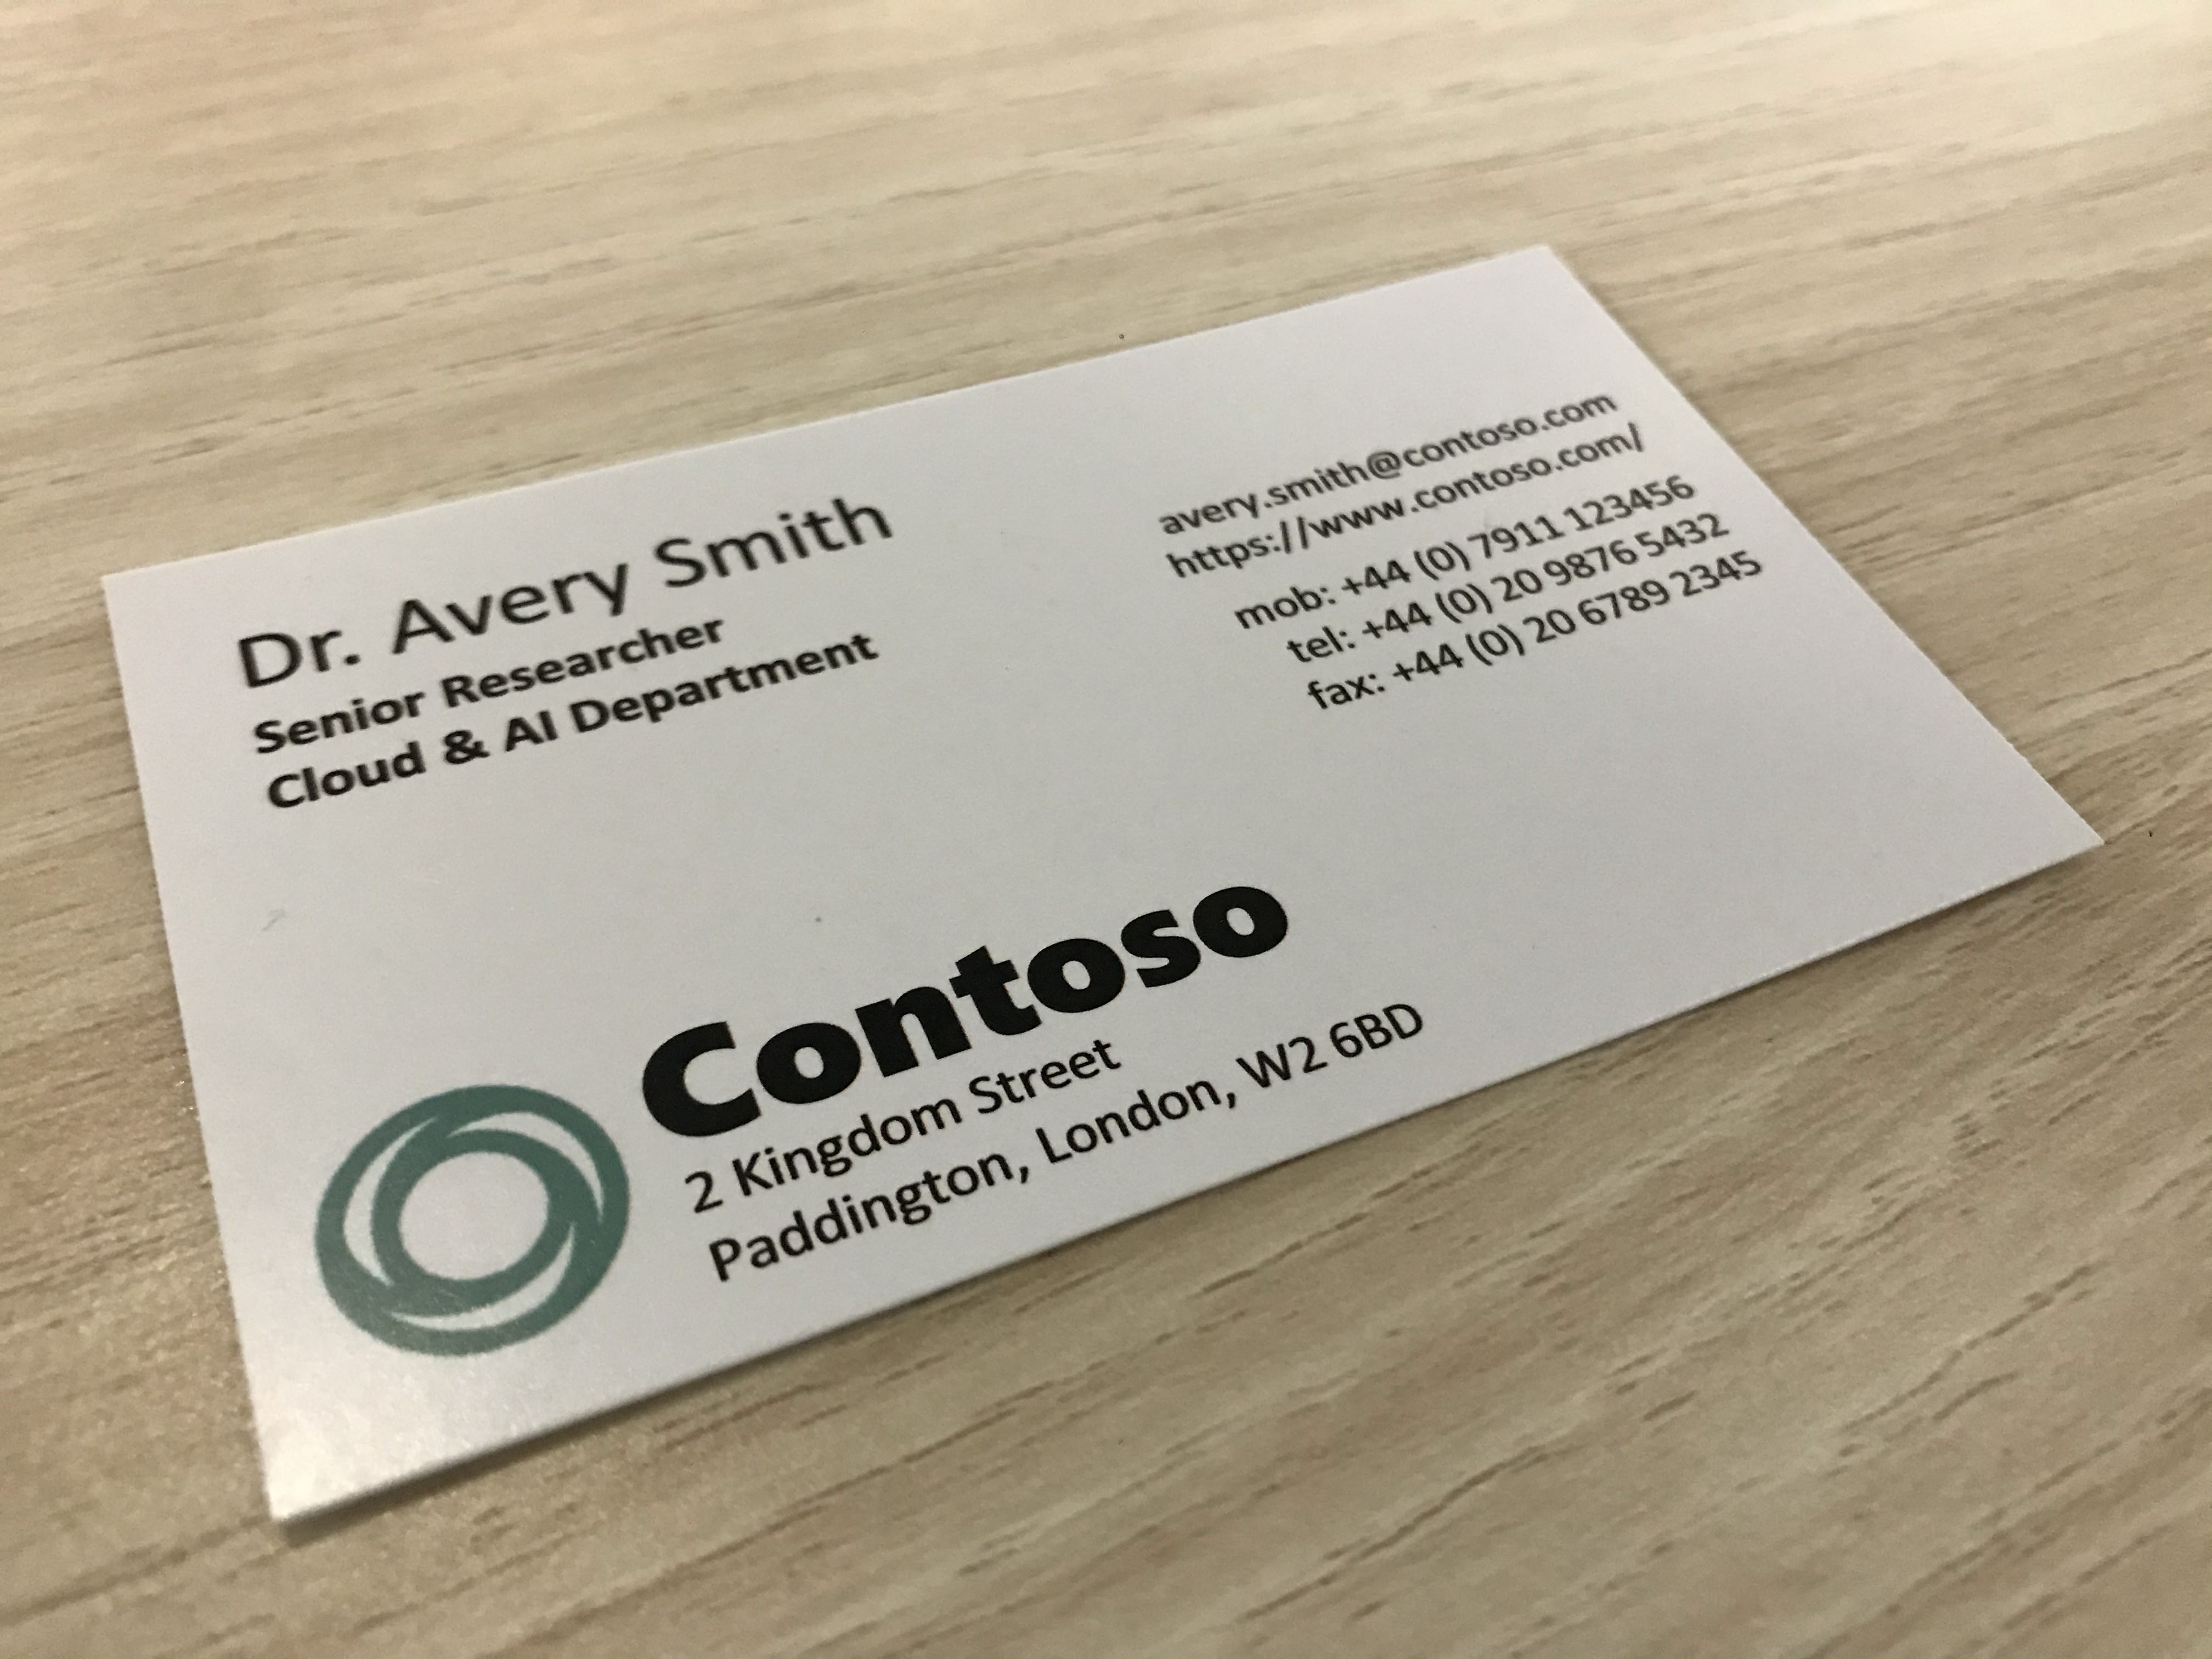 Fotografía que muestra una tarjeta de visita de una empresa llamada Contoso.